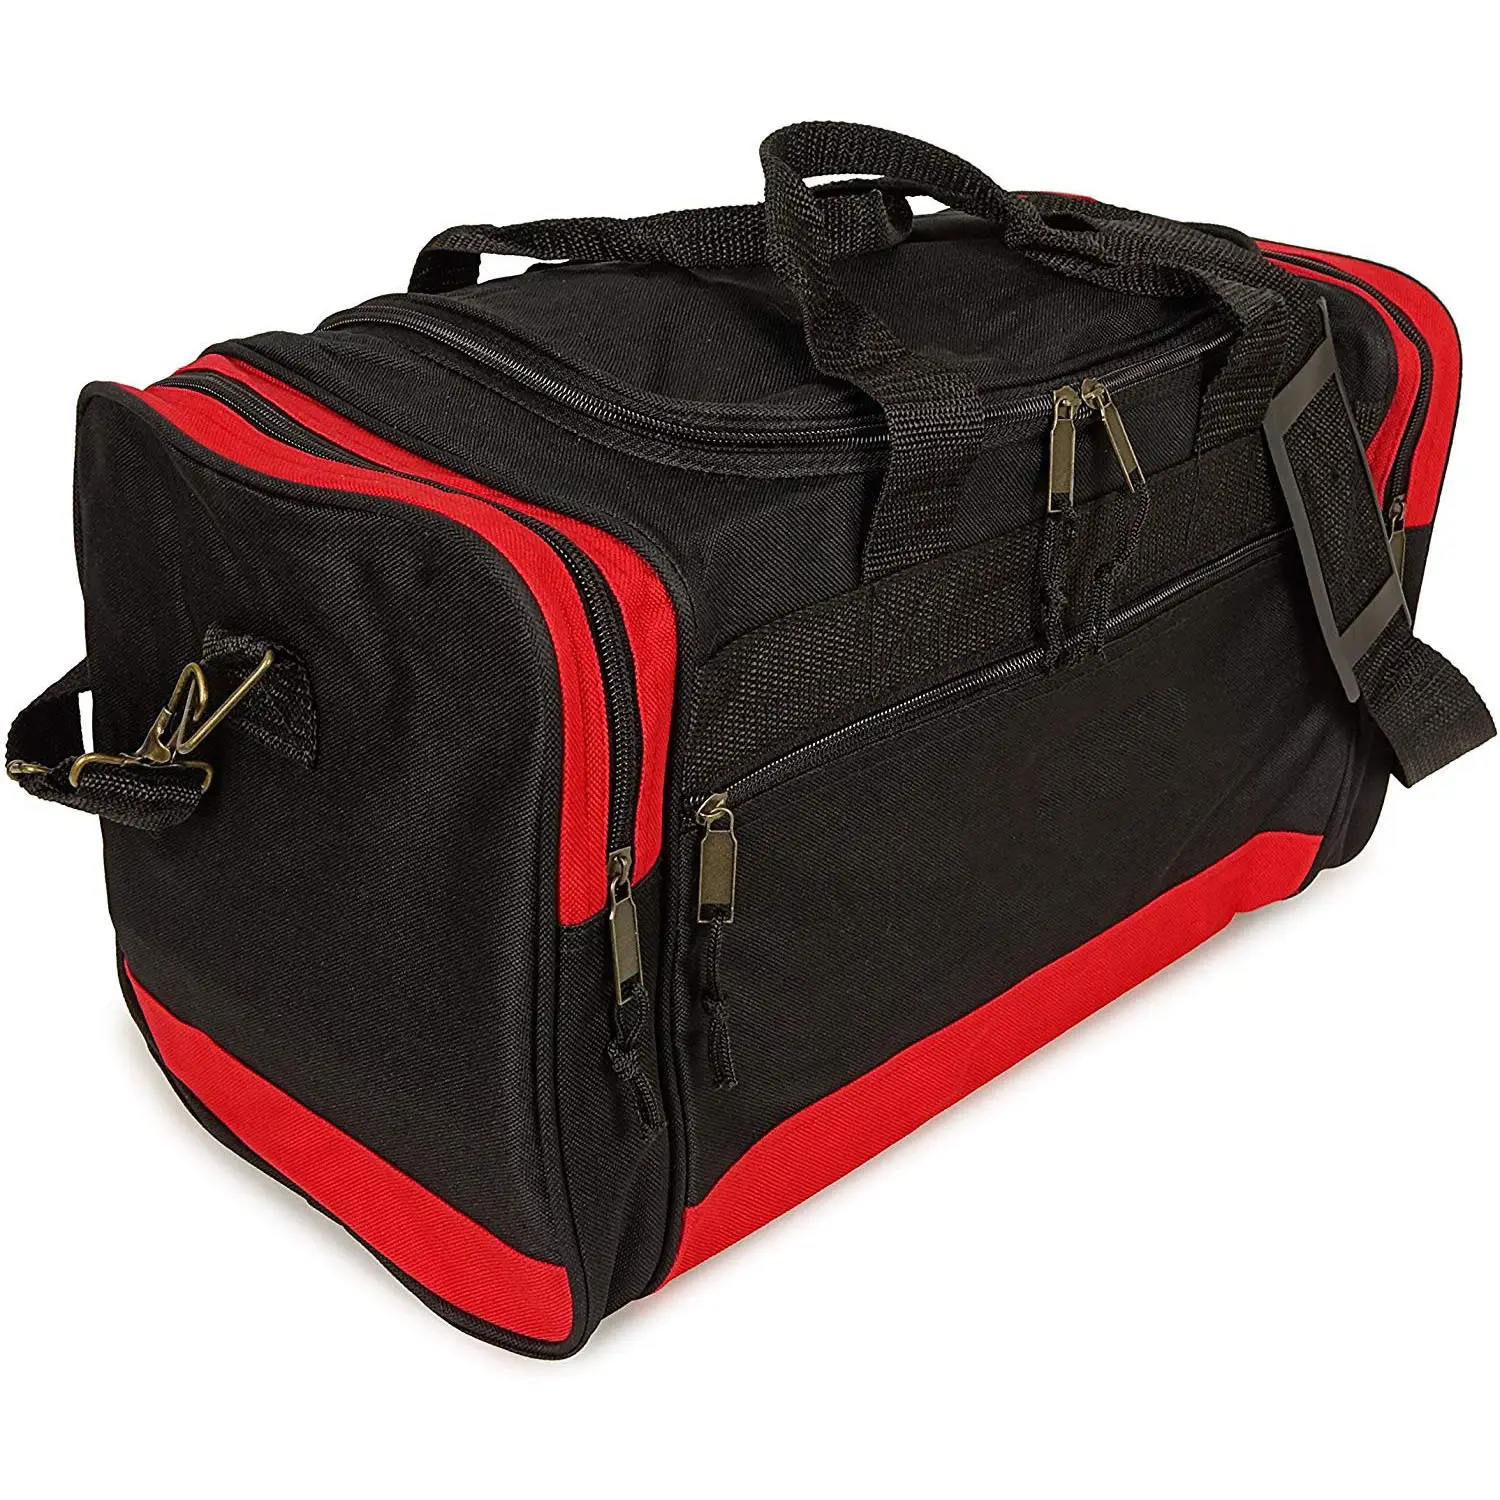 प्रीमियम यात्रा Duffel बैग जिम खेल बैग सामान Duffel पर ले जाने के साथ पक्ष जूते जेब